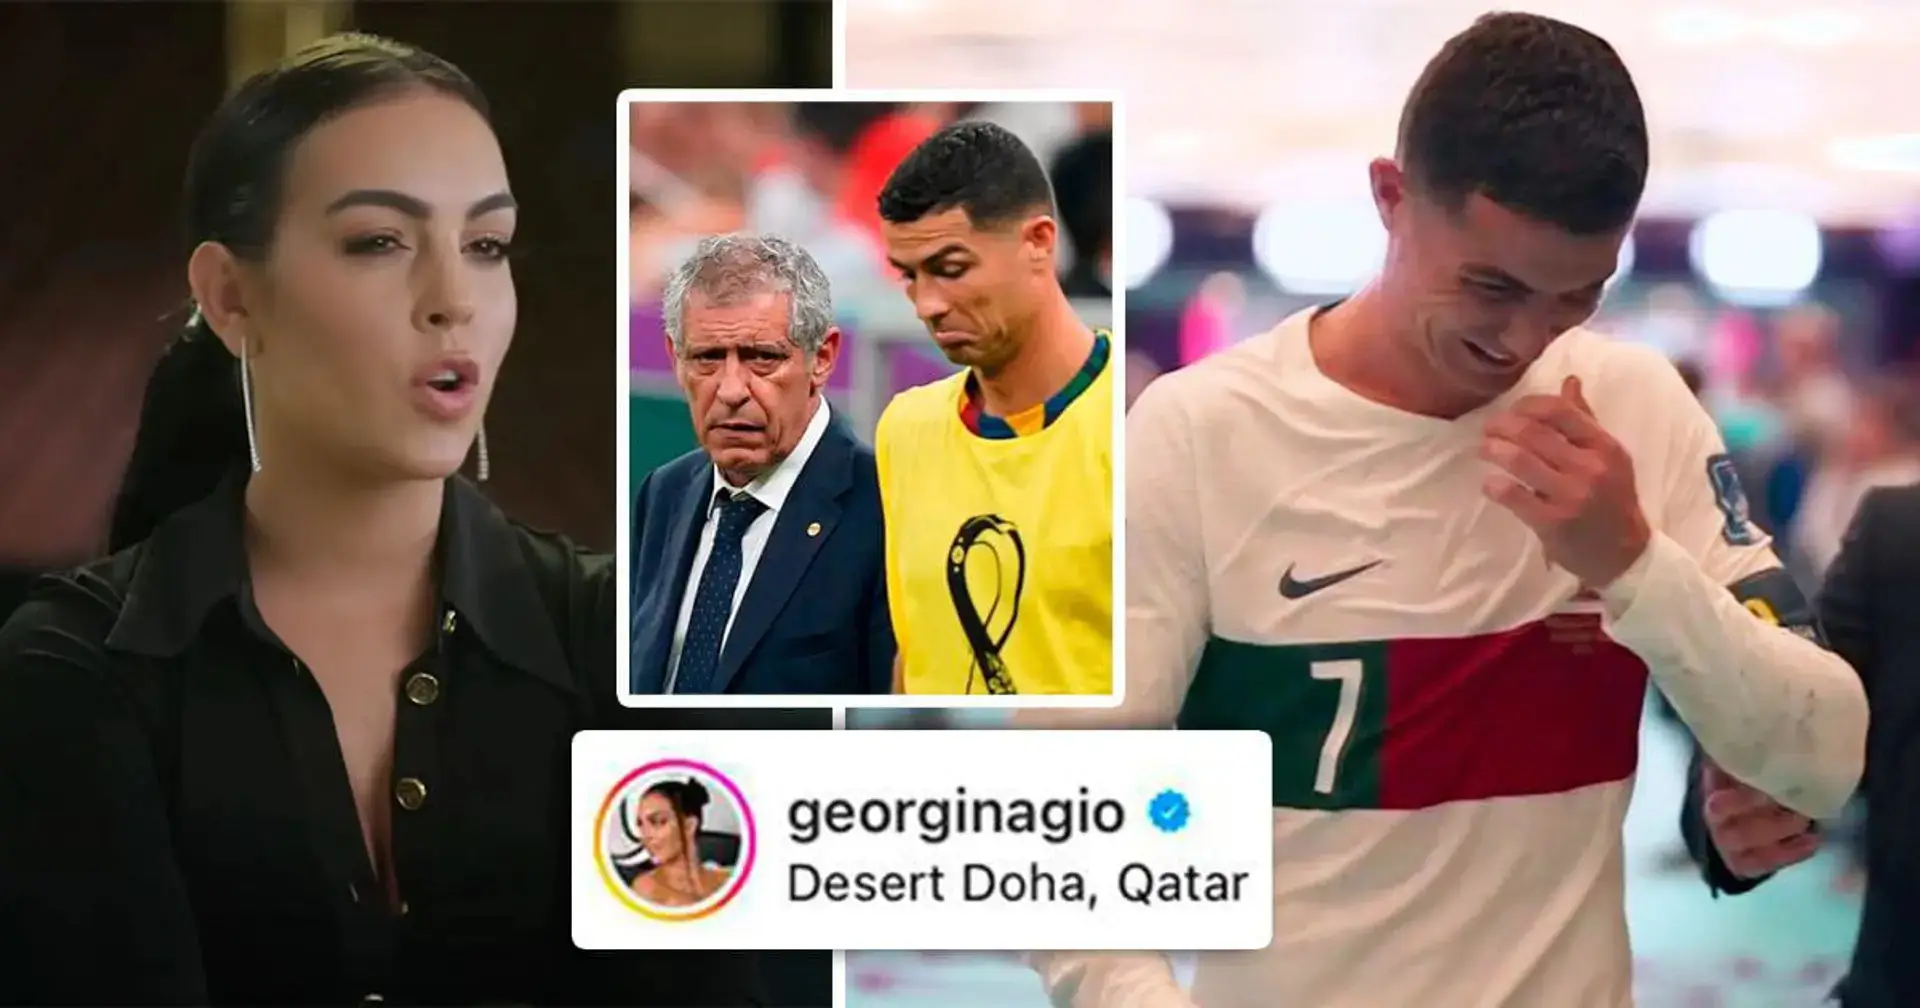 'Hoy, Santos eligió mal': la novia de Ronaldo, Georgina, criticó públicamente a Fernando Santos tras el colapso de la Copa del Mundo de Portugal